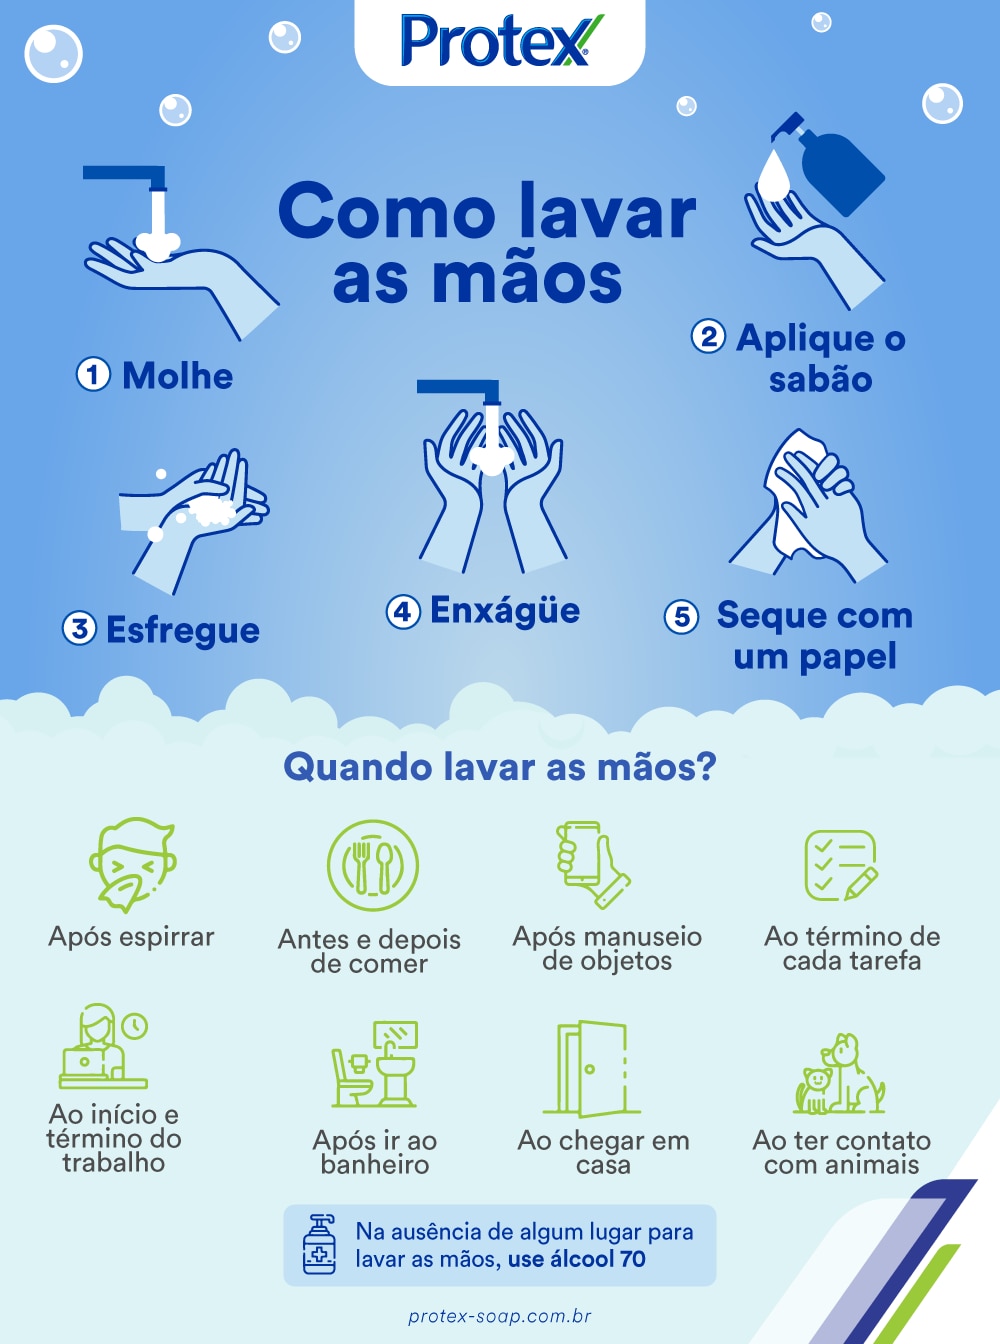 infográfico sobre como lavar as mãos corretamente